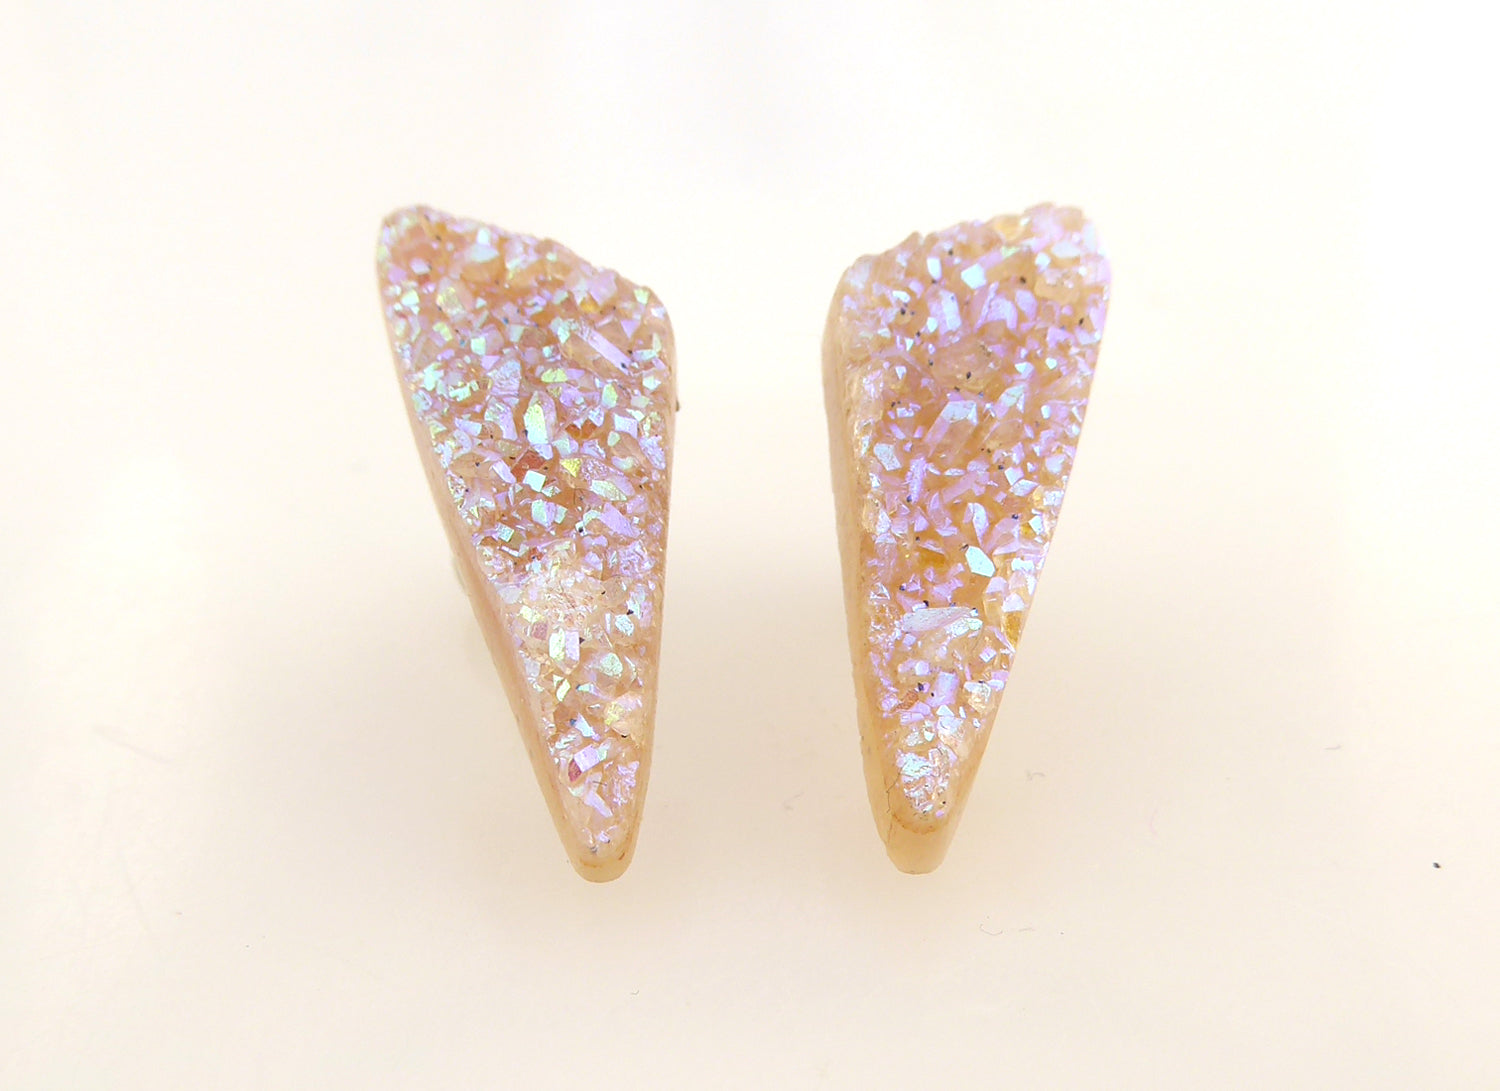 Aura quartz druzy stud earrings by Jenny Dayco 3